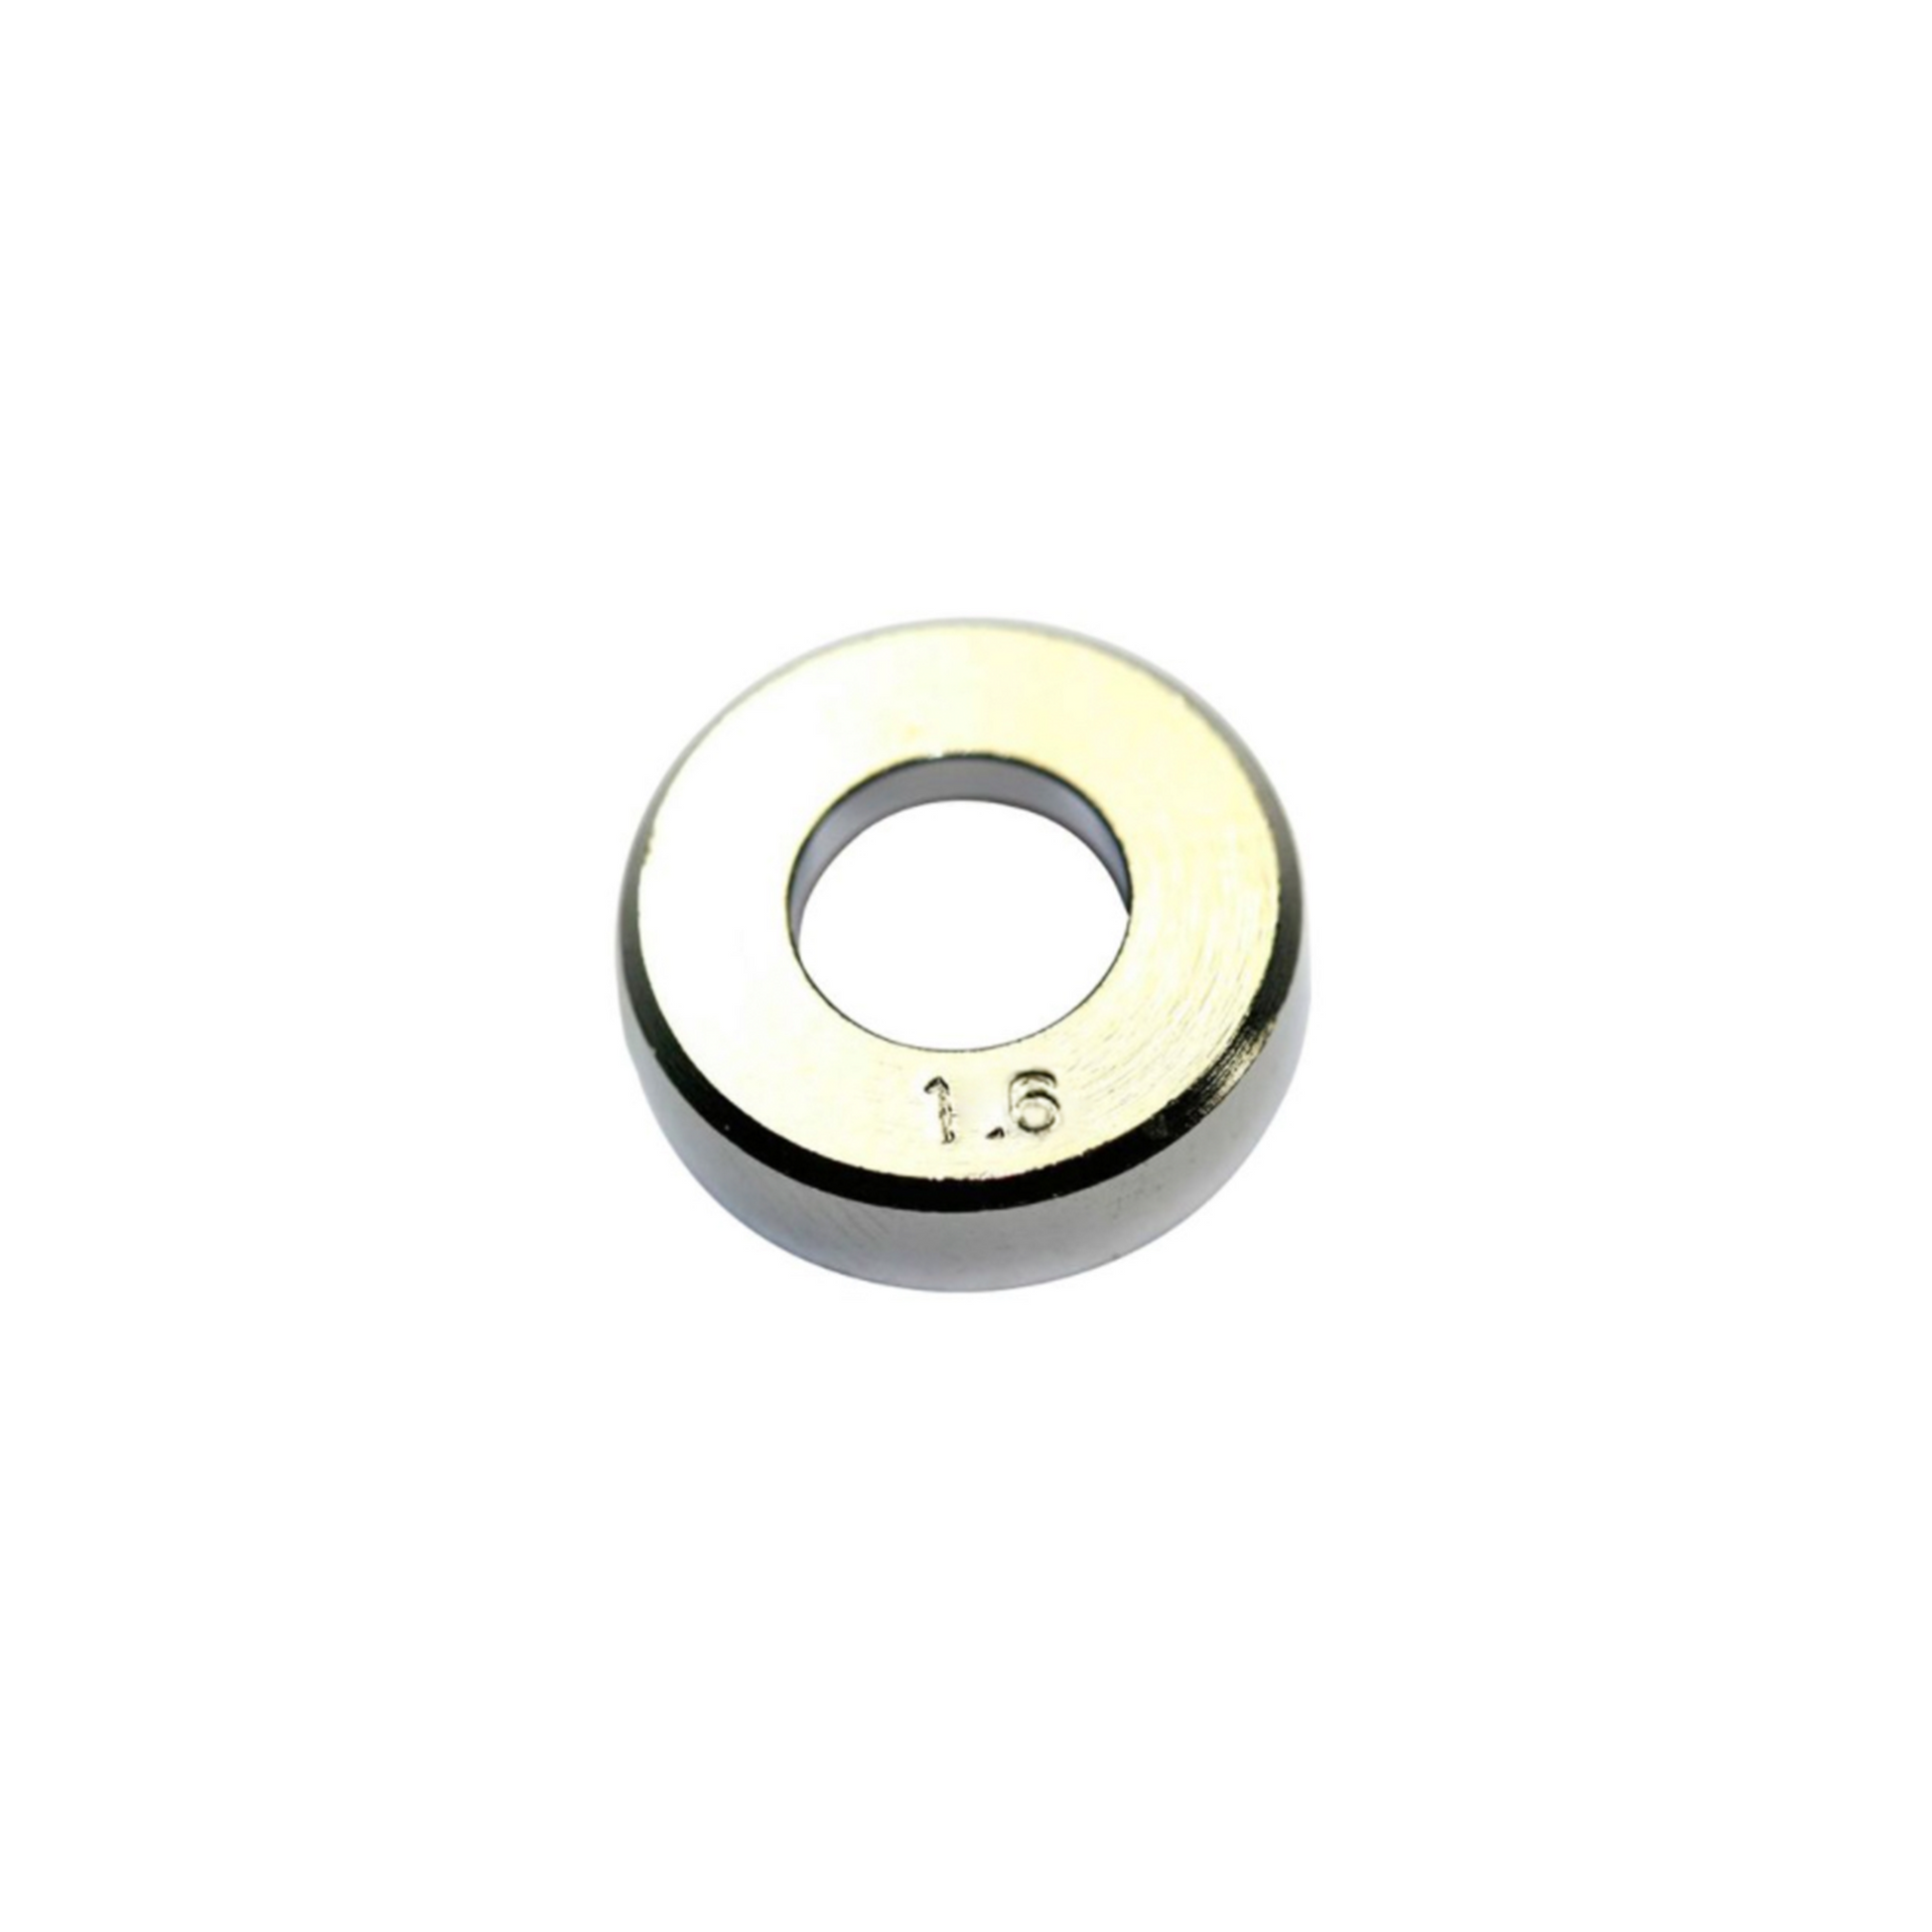 Hakko Products_ B1630 Solder diameter adjustment bracket 1.6MM_ Soldering Accessories_ Hakko Products